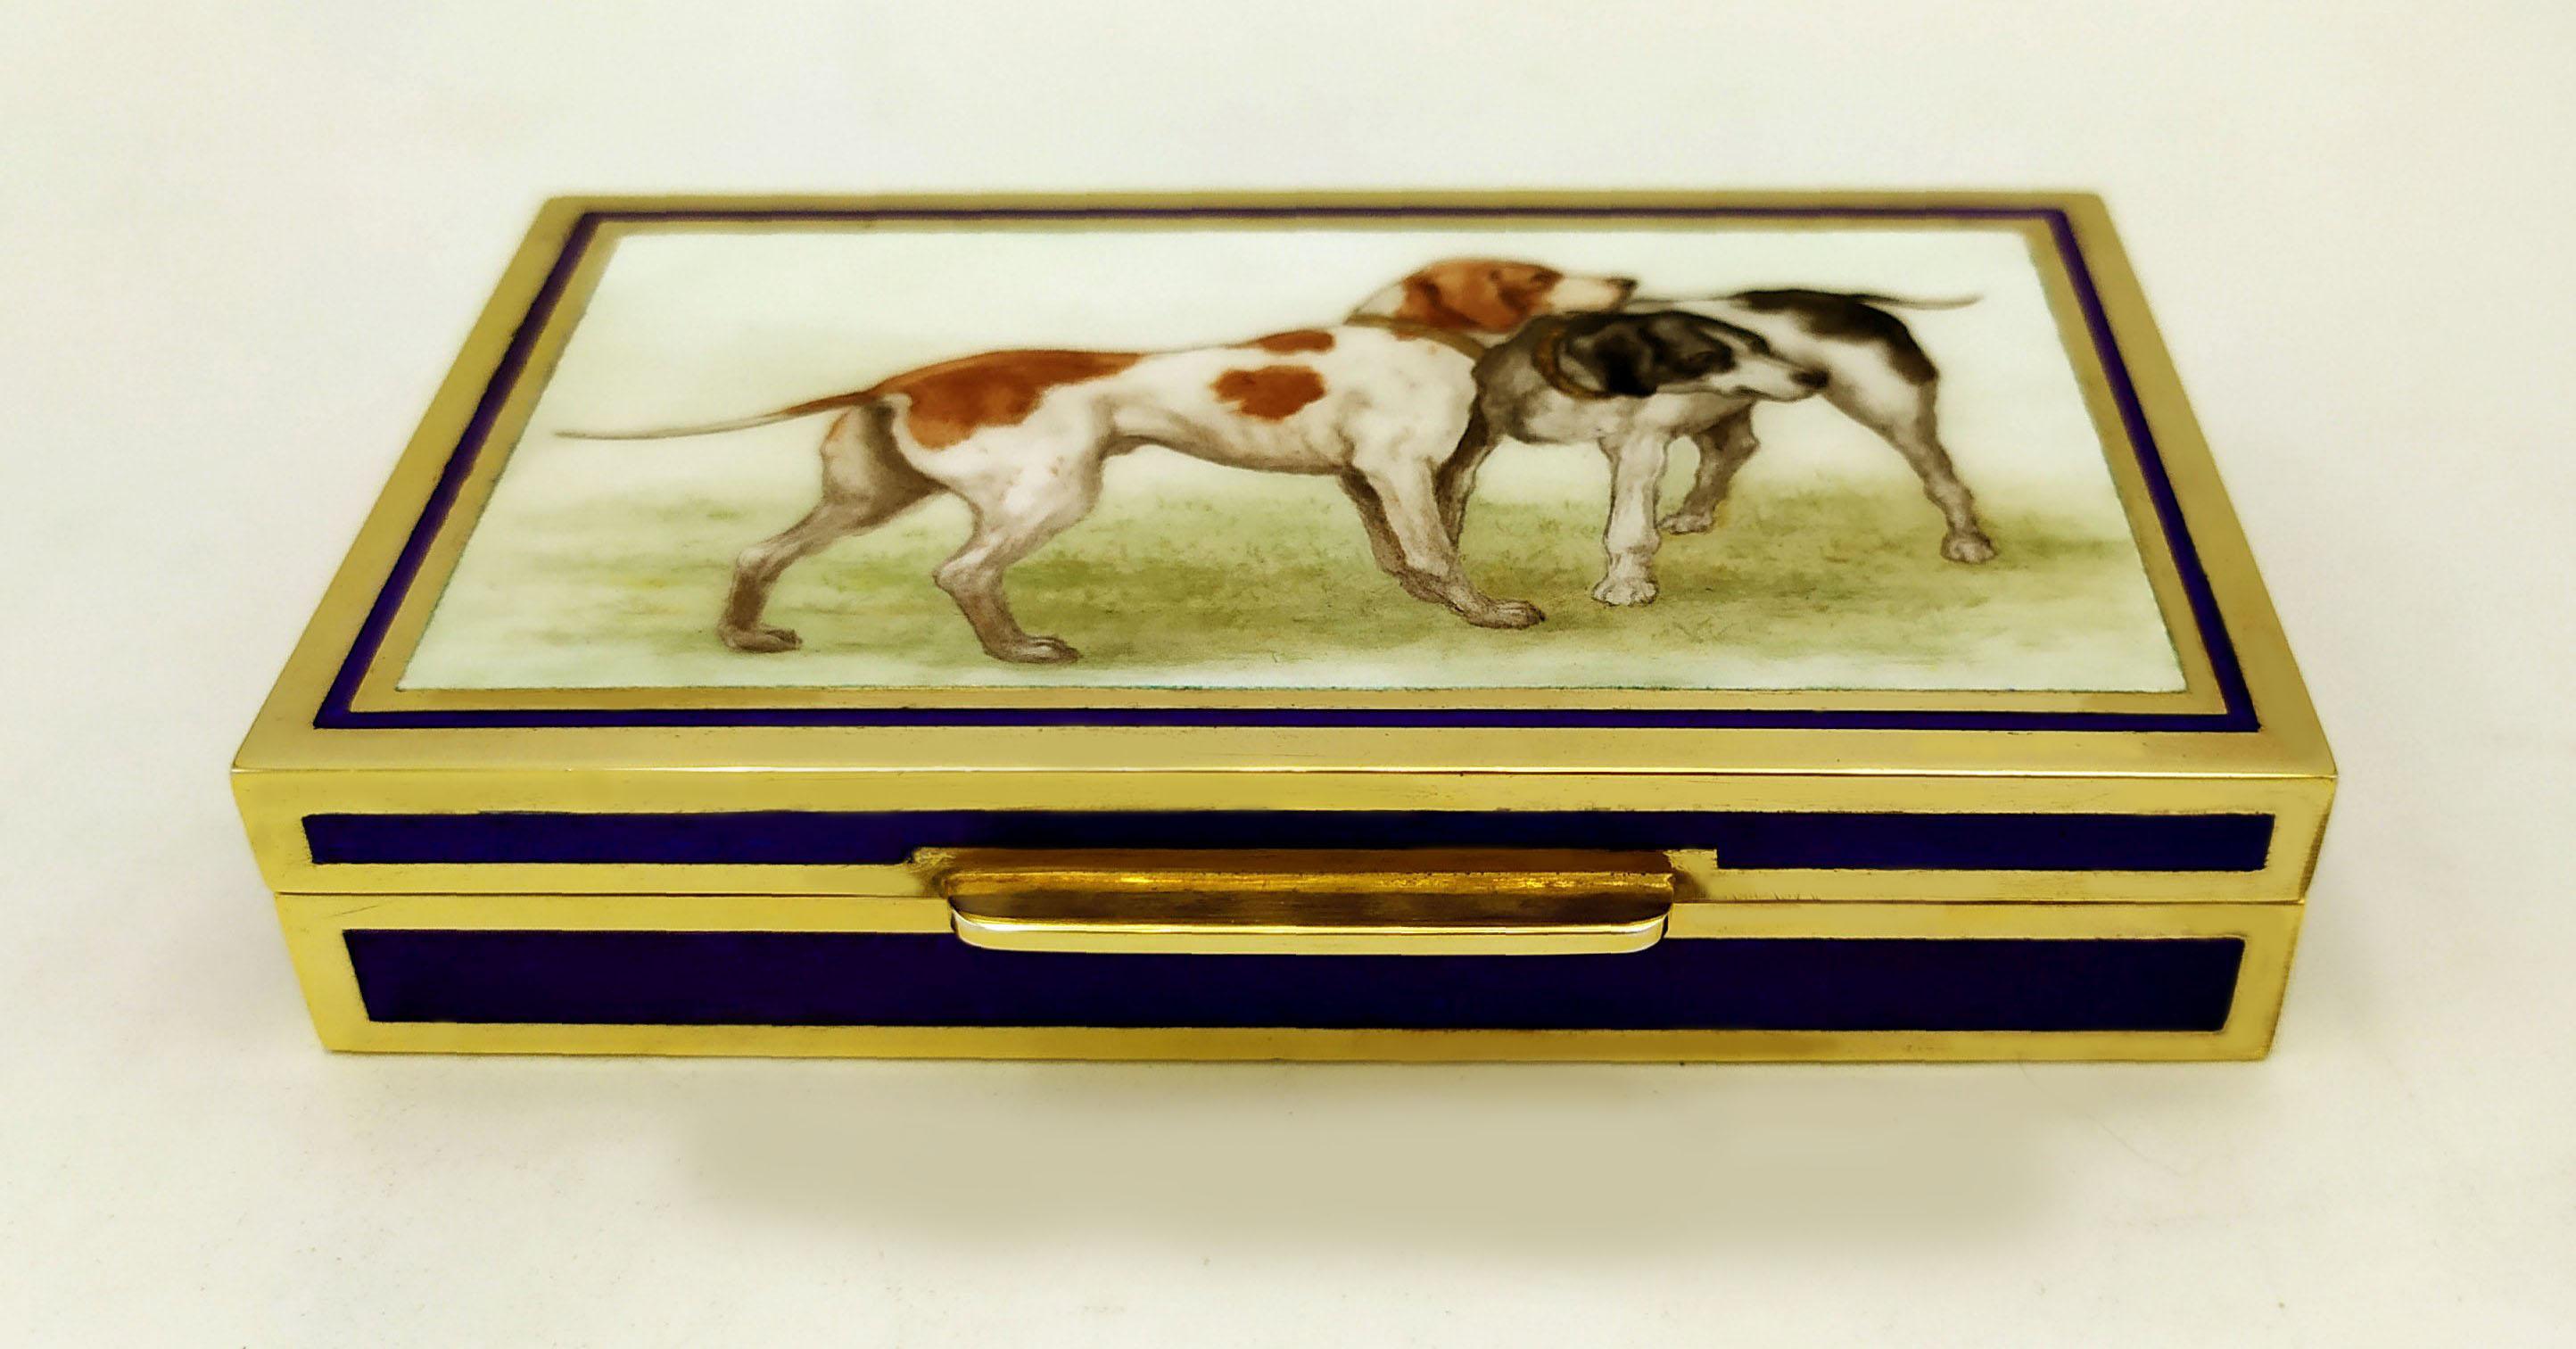 Rechteckige Zigarettenschachtel aus 925/1000 Sterlingsilber, vergoldet mit transluzentem, gebranntem Email auf Guillochè und feiner, vom Maler Renato Dainelli handgemalter Miniatur, die zwei Jagdhunde darstellt. Anfang 1900 englischer Jugendstil.